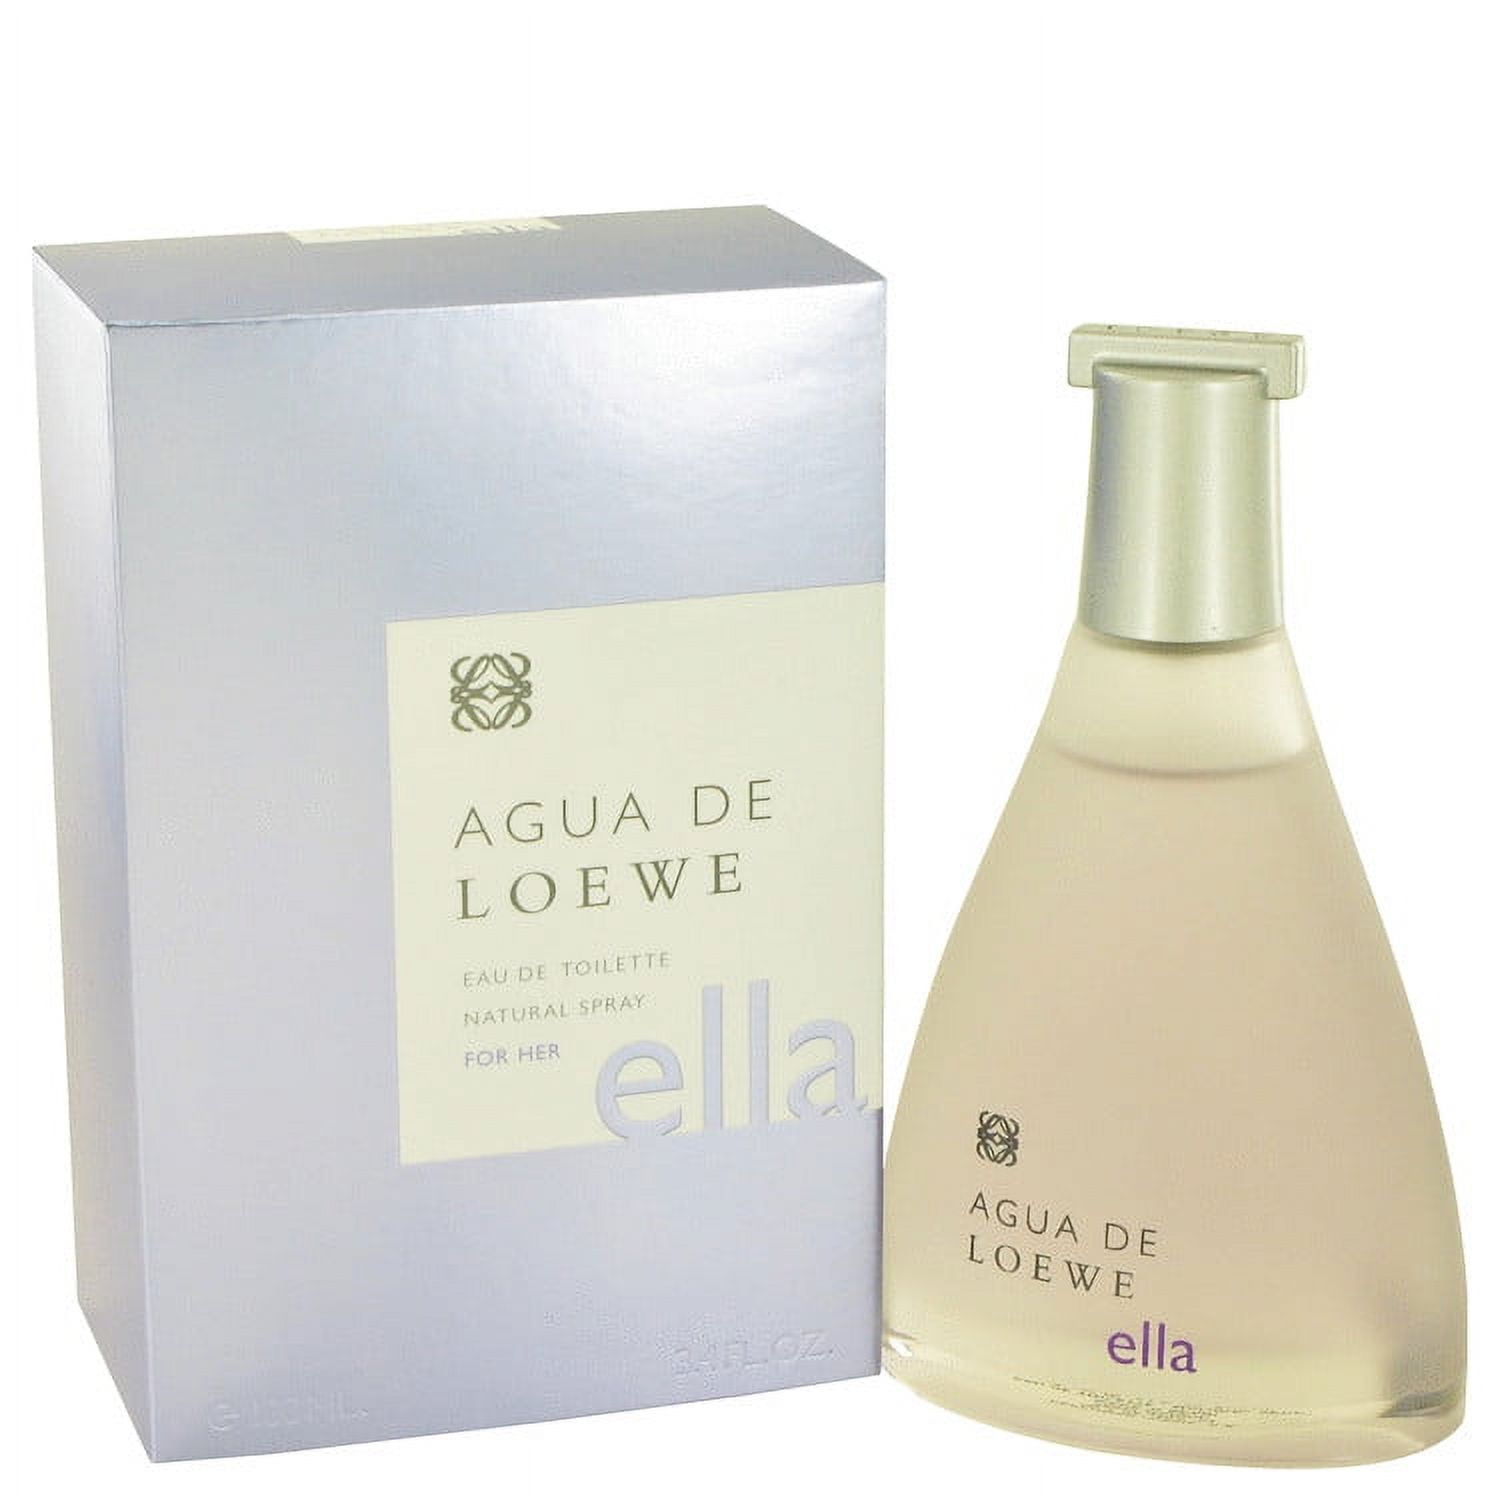 Buy Agua De Loewe Ella de Loewe Online Maroc